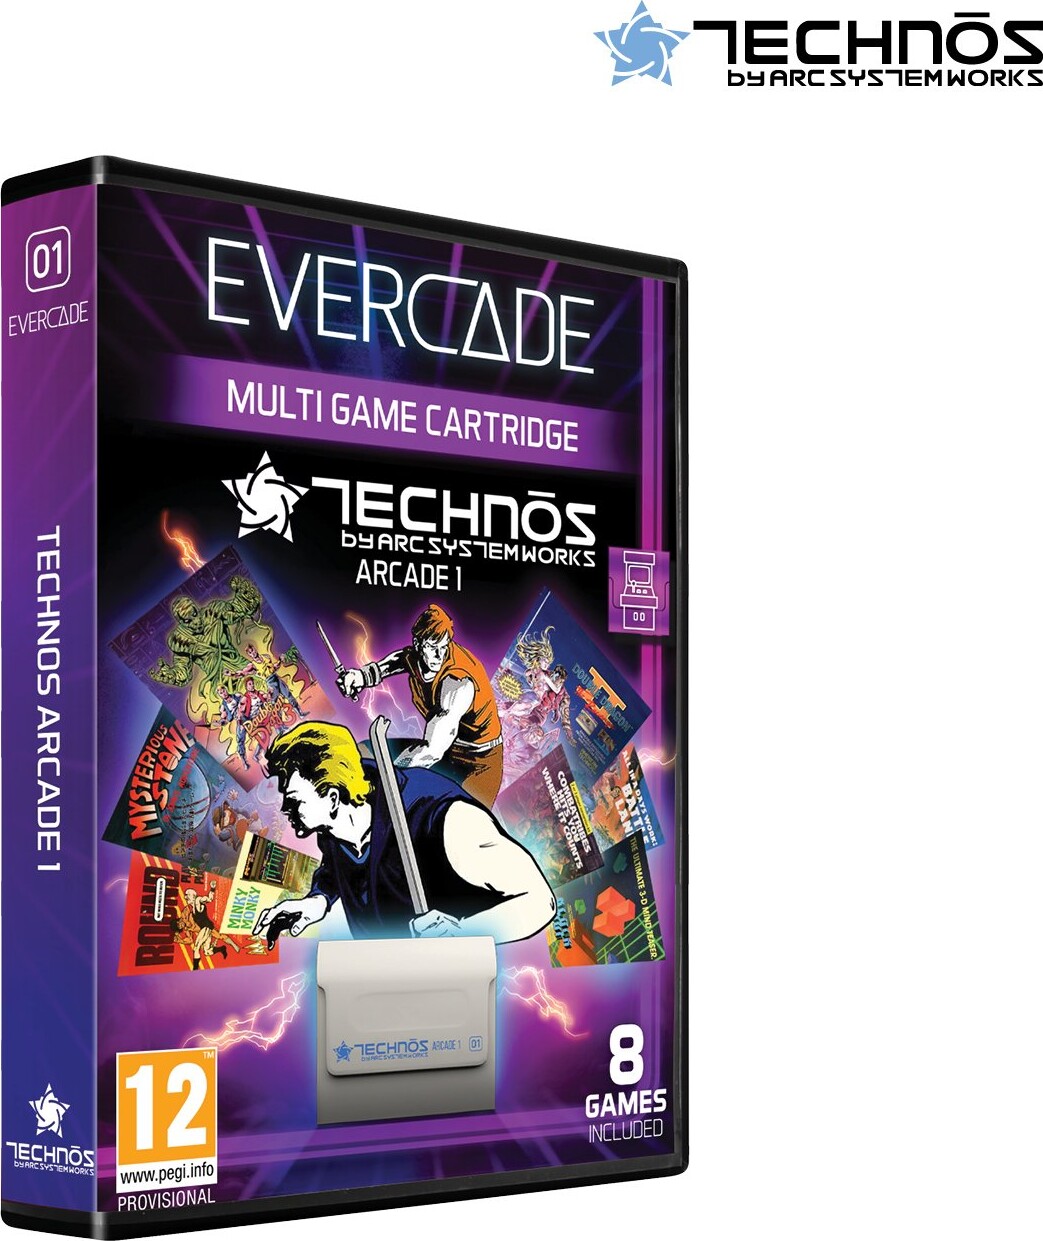 Billede af Evercade - Technos Arcade 1 - Multi Game Cartridge - 8 Spil